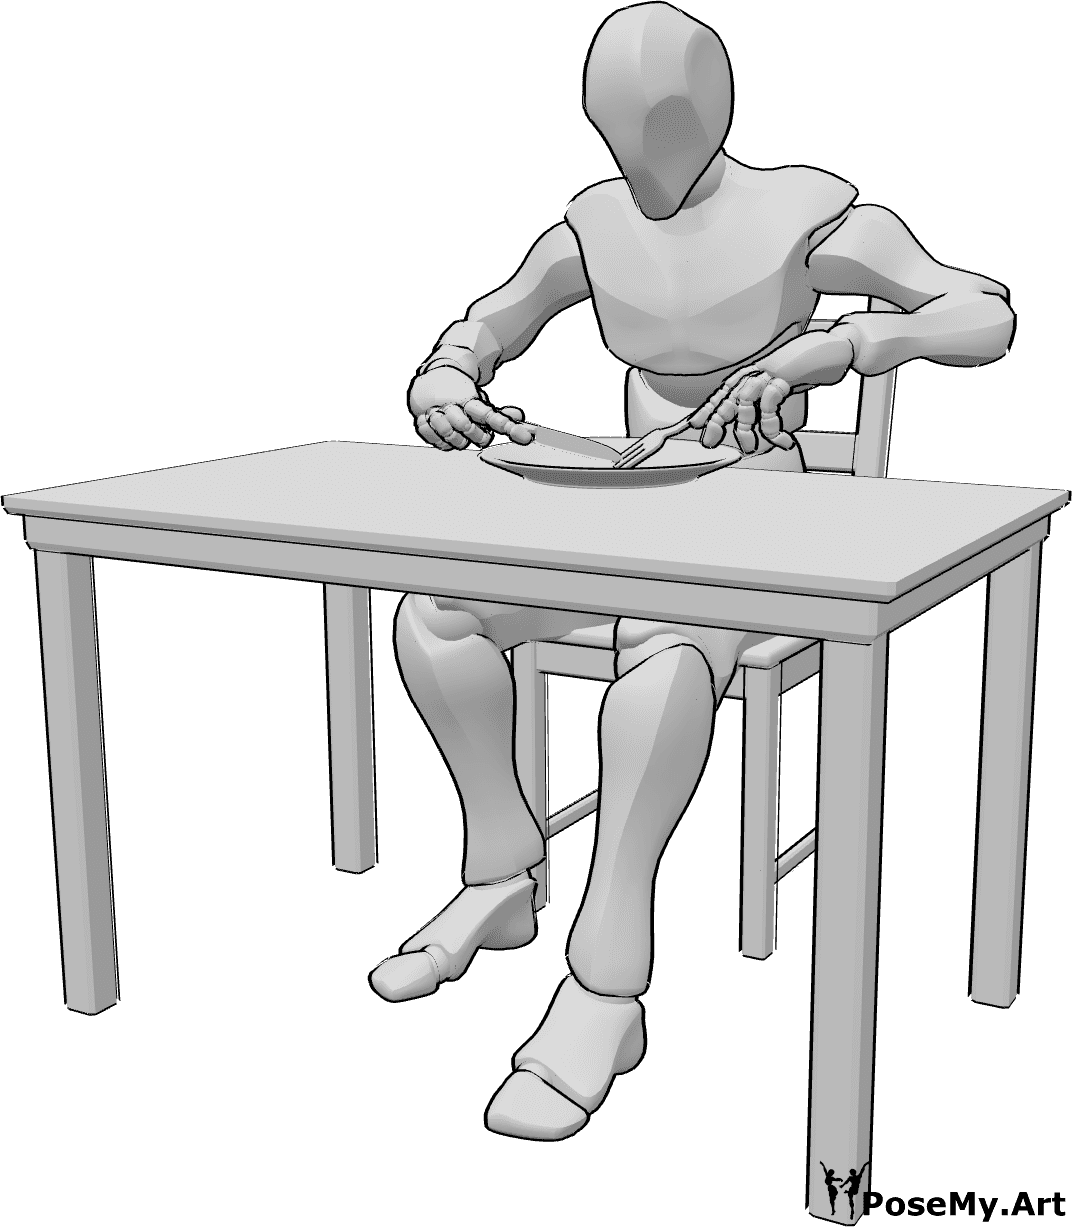 Referencia de poses- Masculino comiendo pose - Varón sentado a la mesa del comedor y comiendo, con tenedor y cuchillo, comiendo referencia